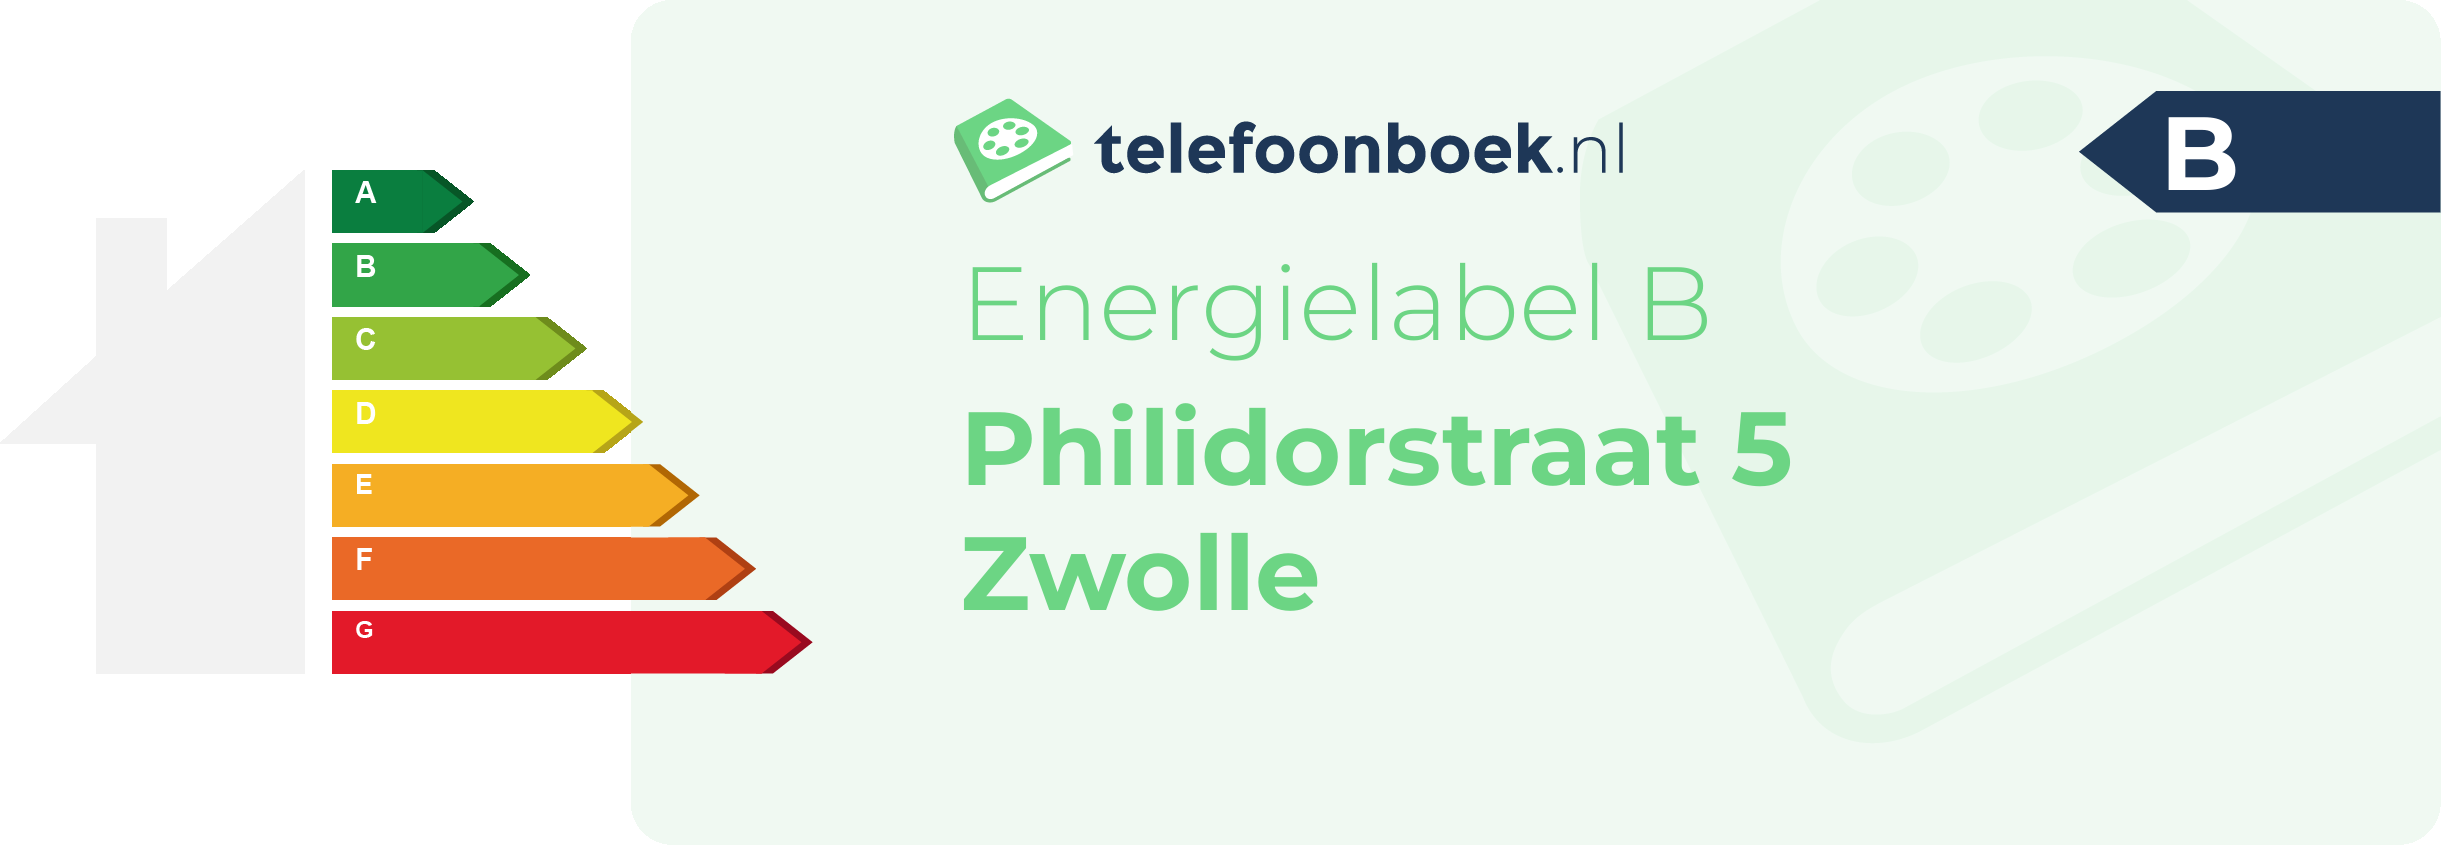 Energielabel Philidorstraat 5 Zwolle